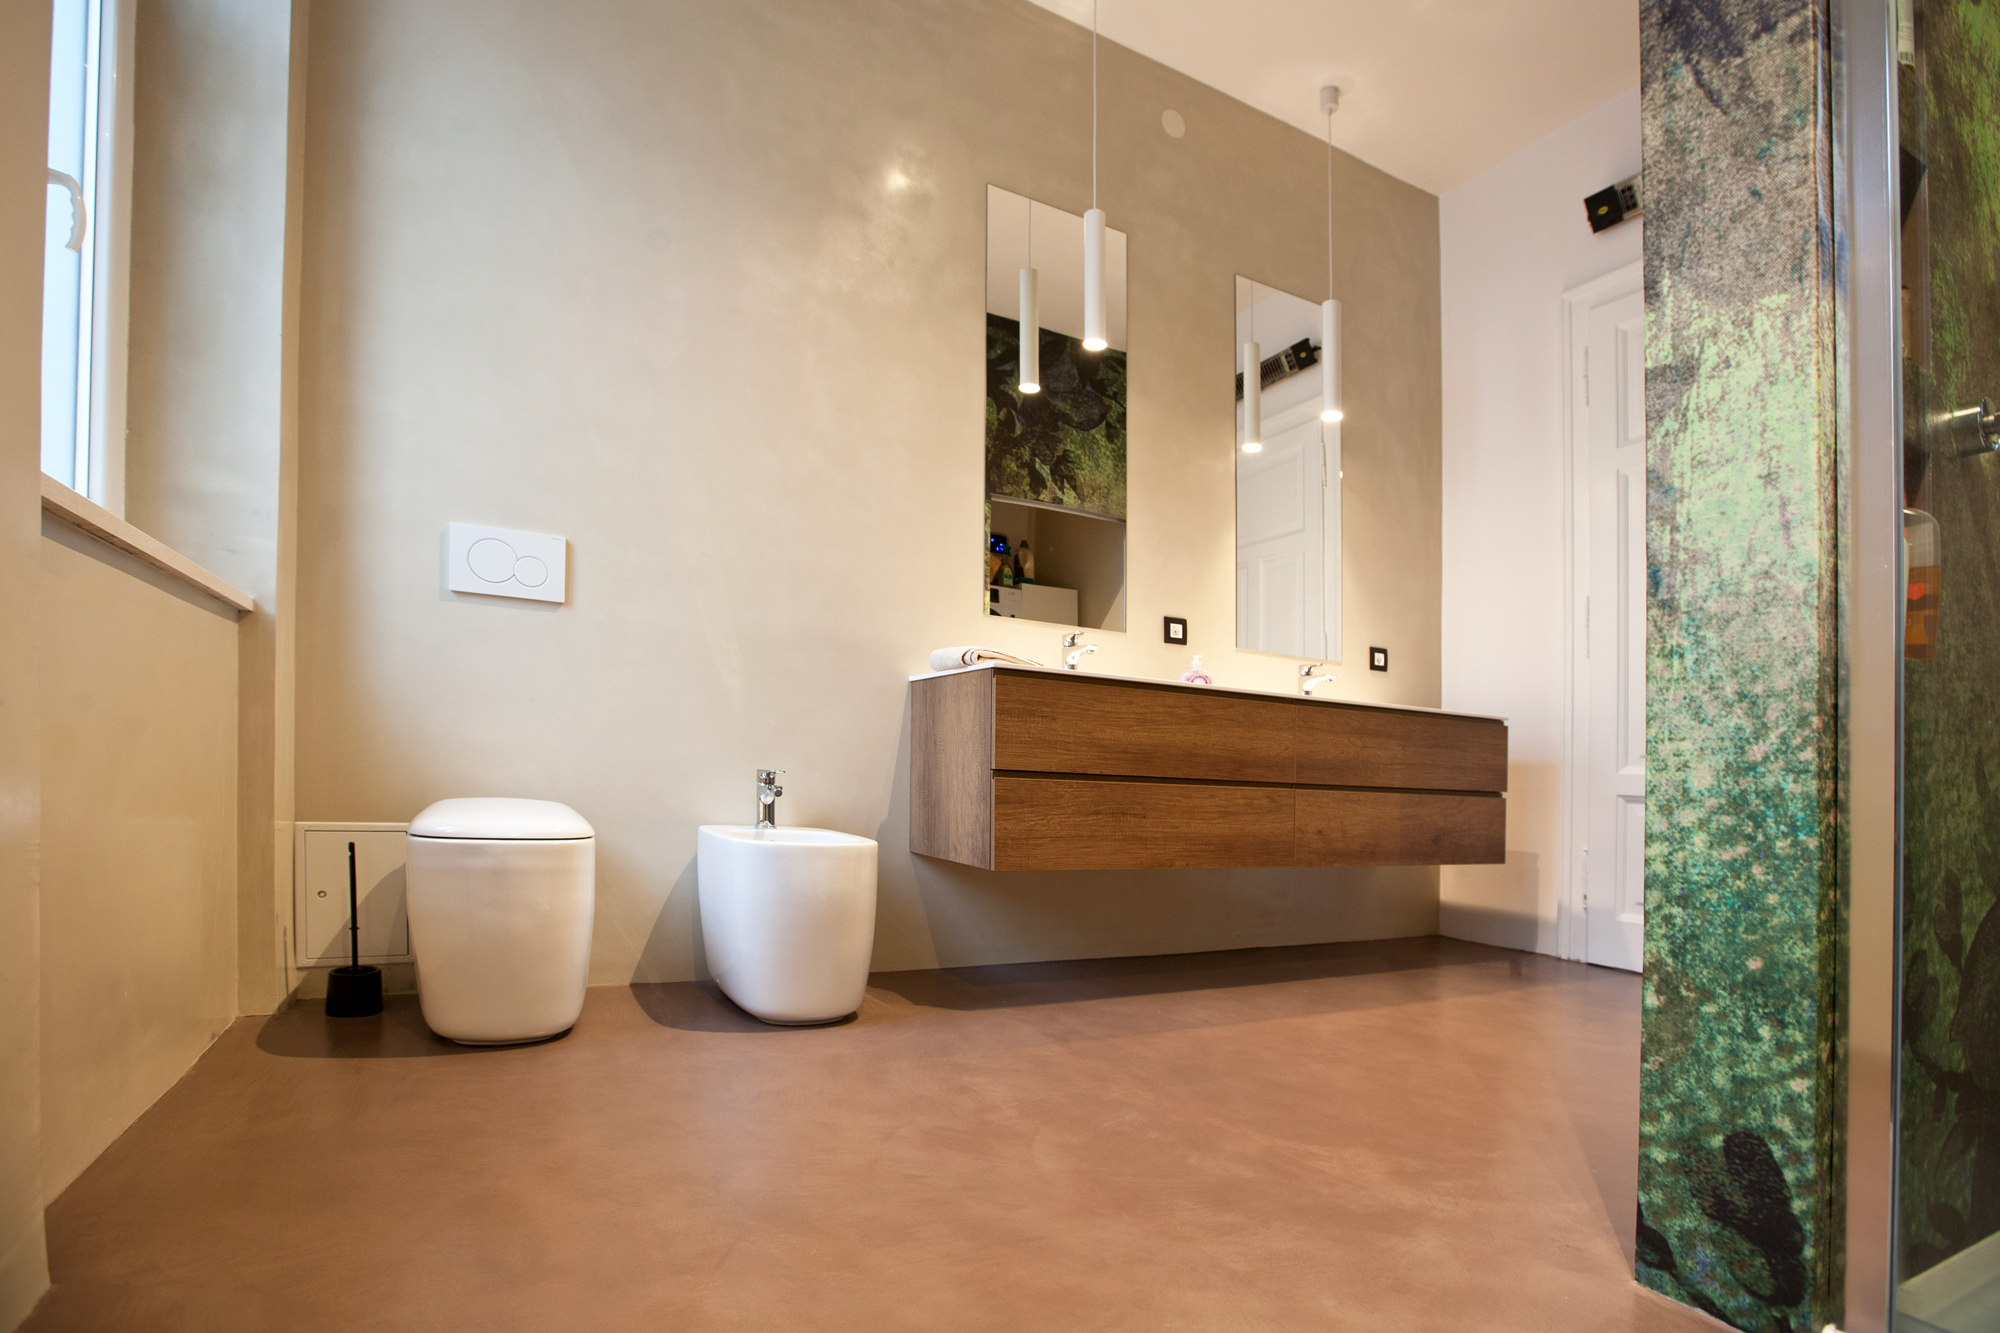 Microverlay®, low thickness concrete resin floor autumn brown finish. Private villa, Rijeka, Croatia